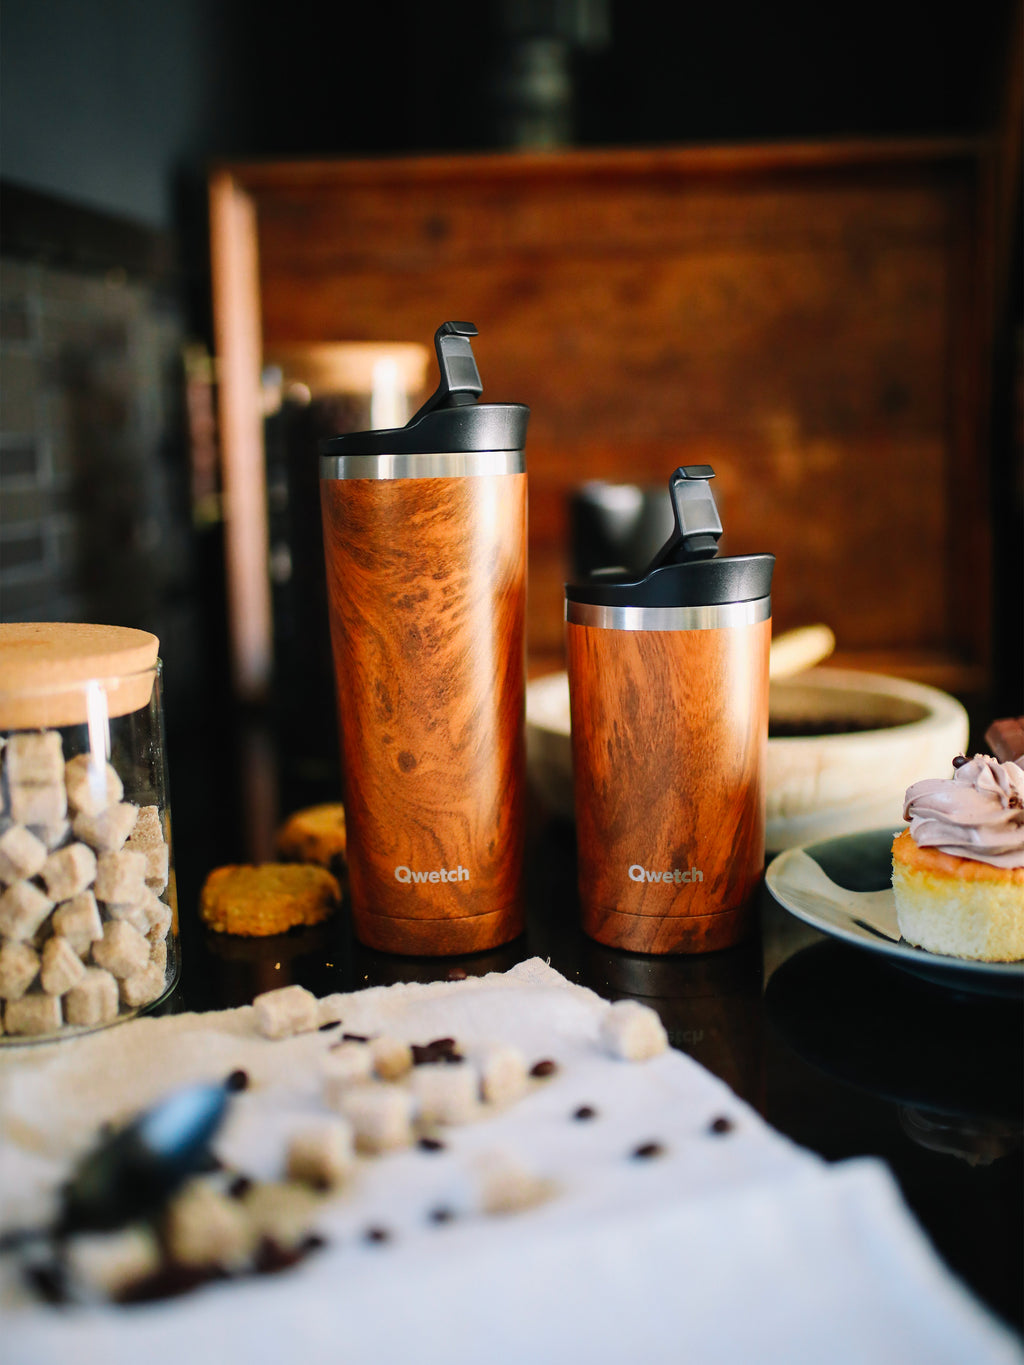 Travel mug isotherme - Wood